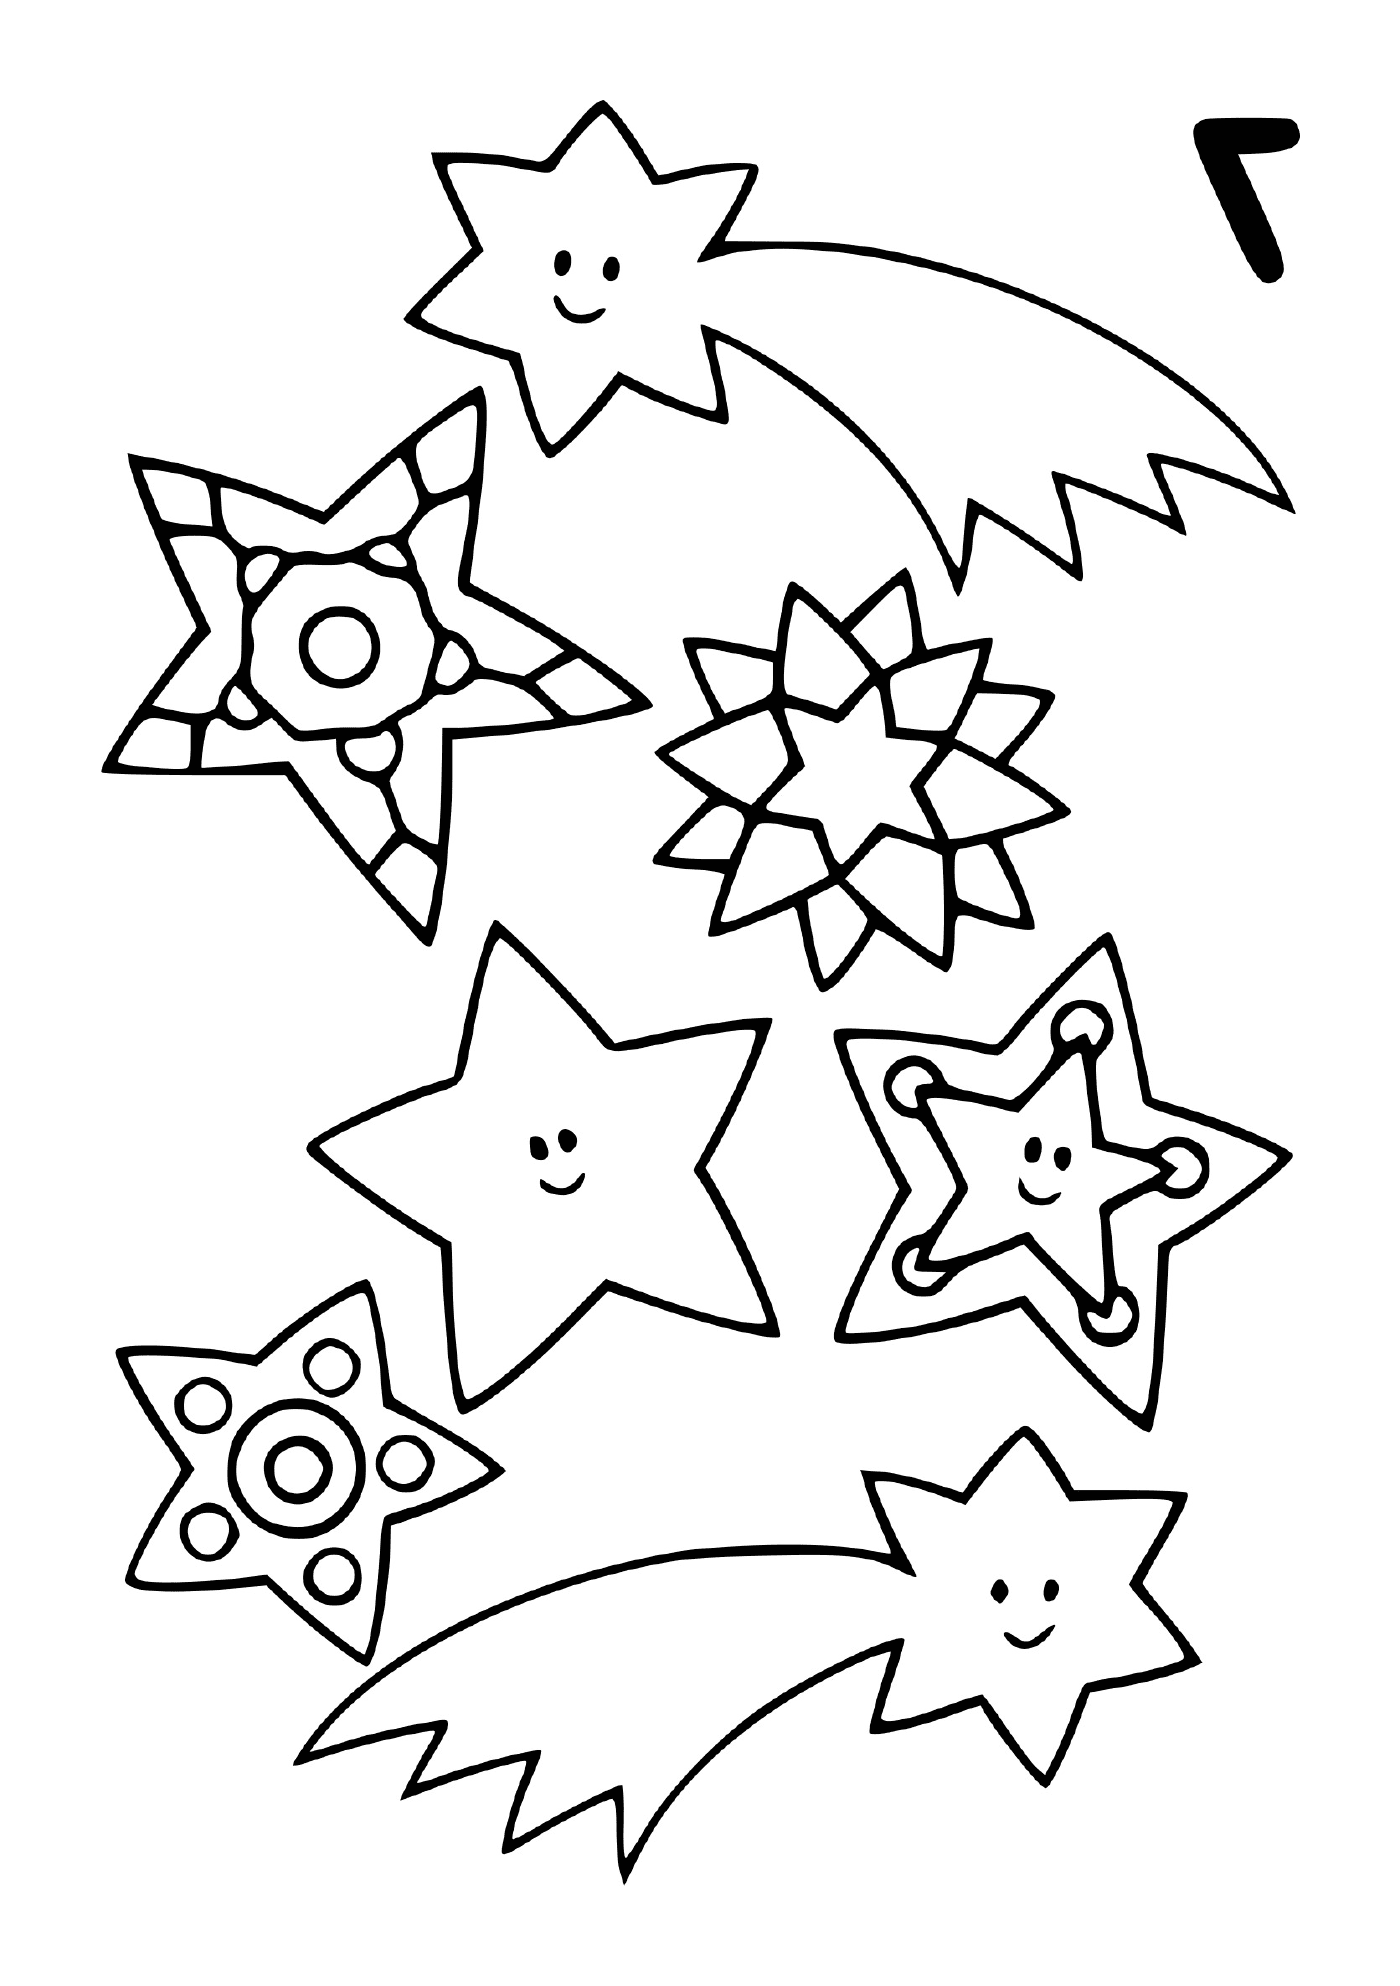  Un conjunto de estrellas fugaces en diferentes formas 